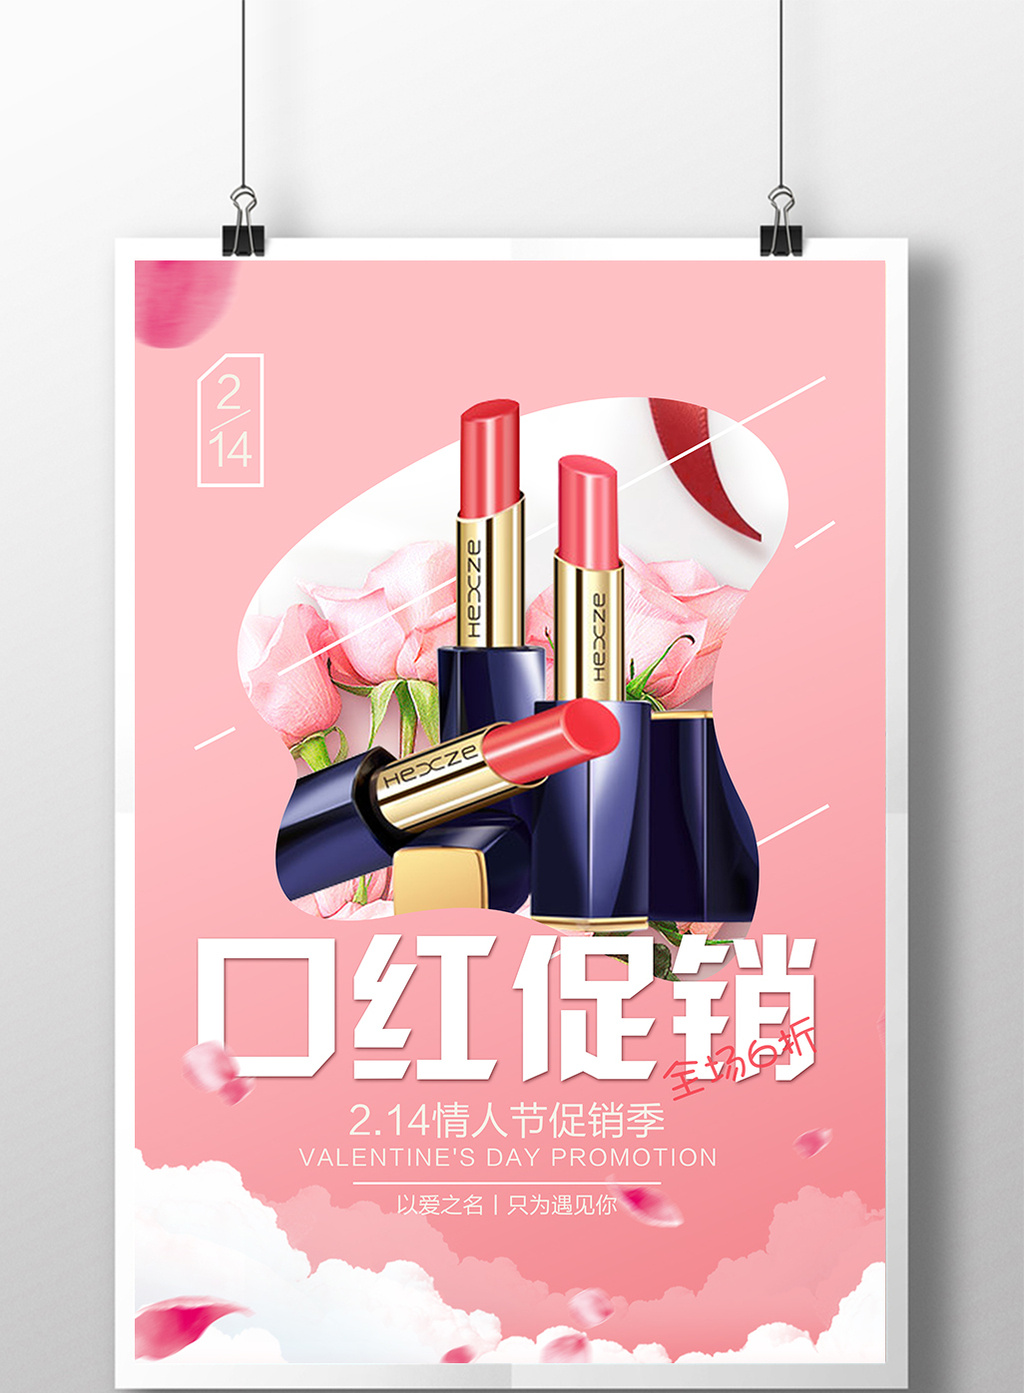 包图 广告设计 节日设计 情人节 【psd】 情人节口红促销海报  上传